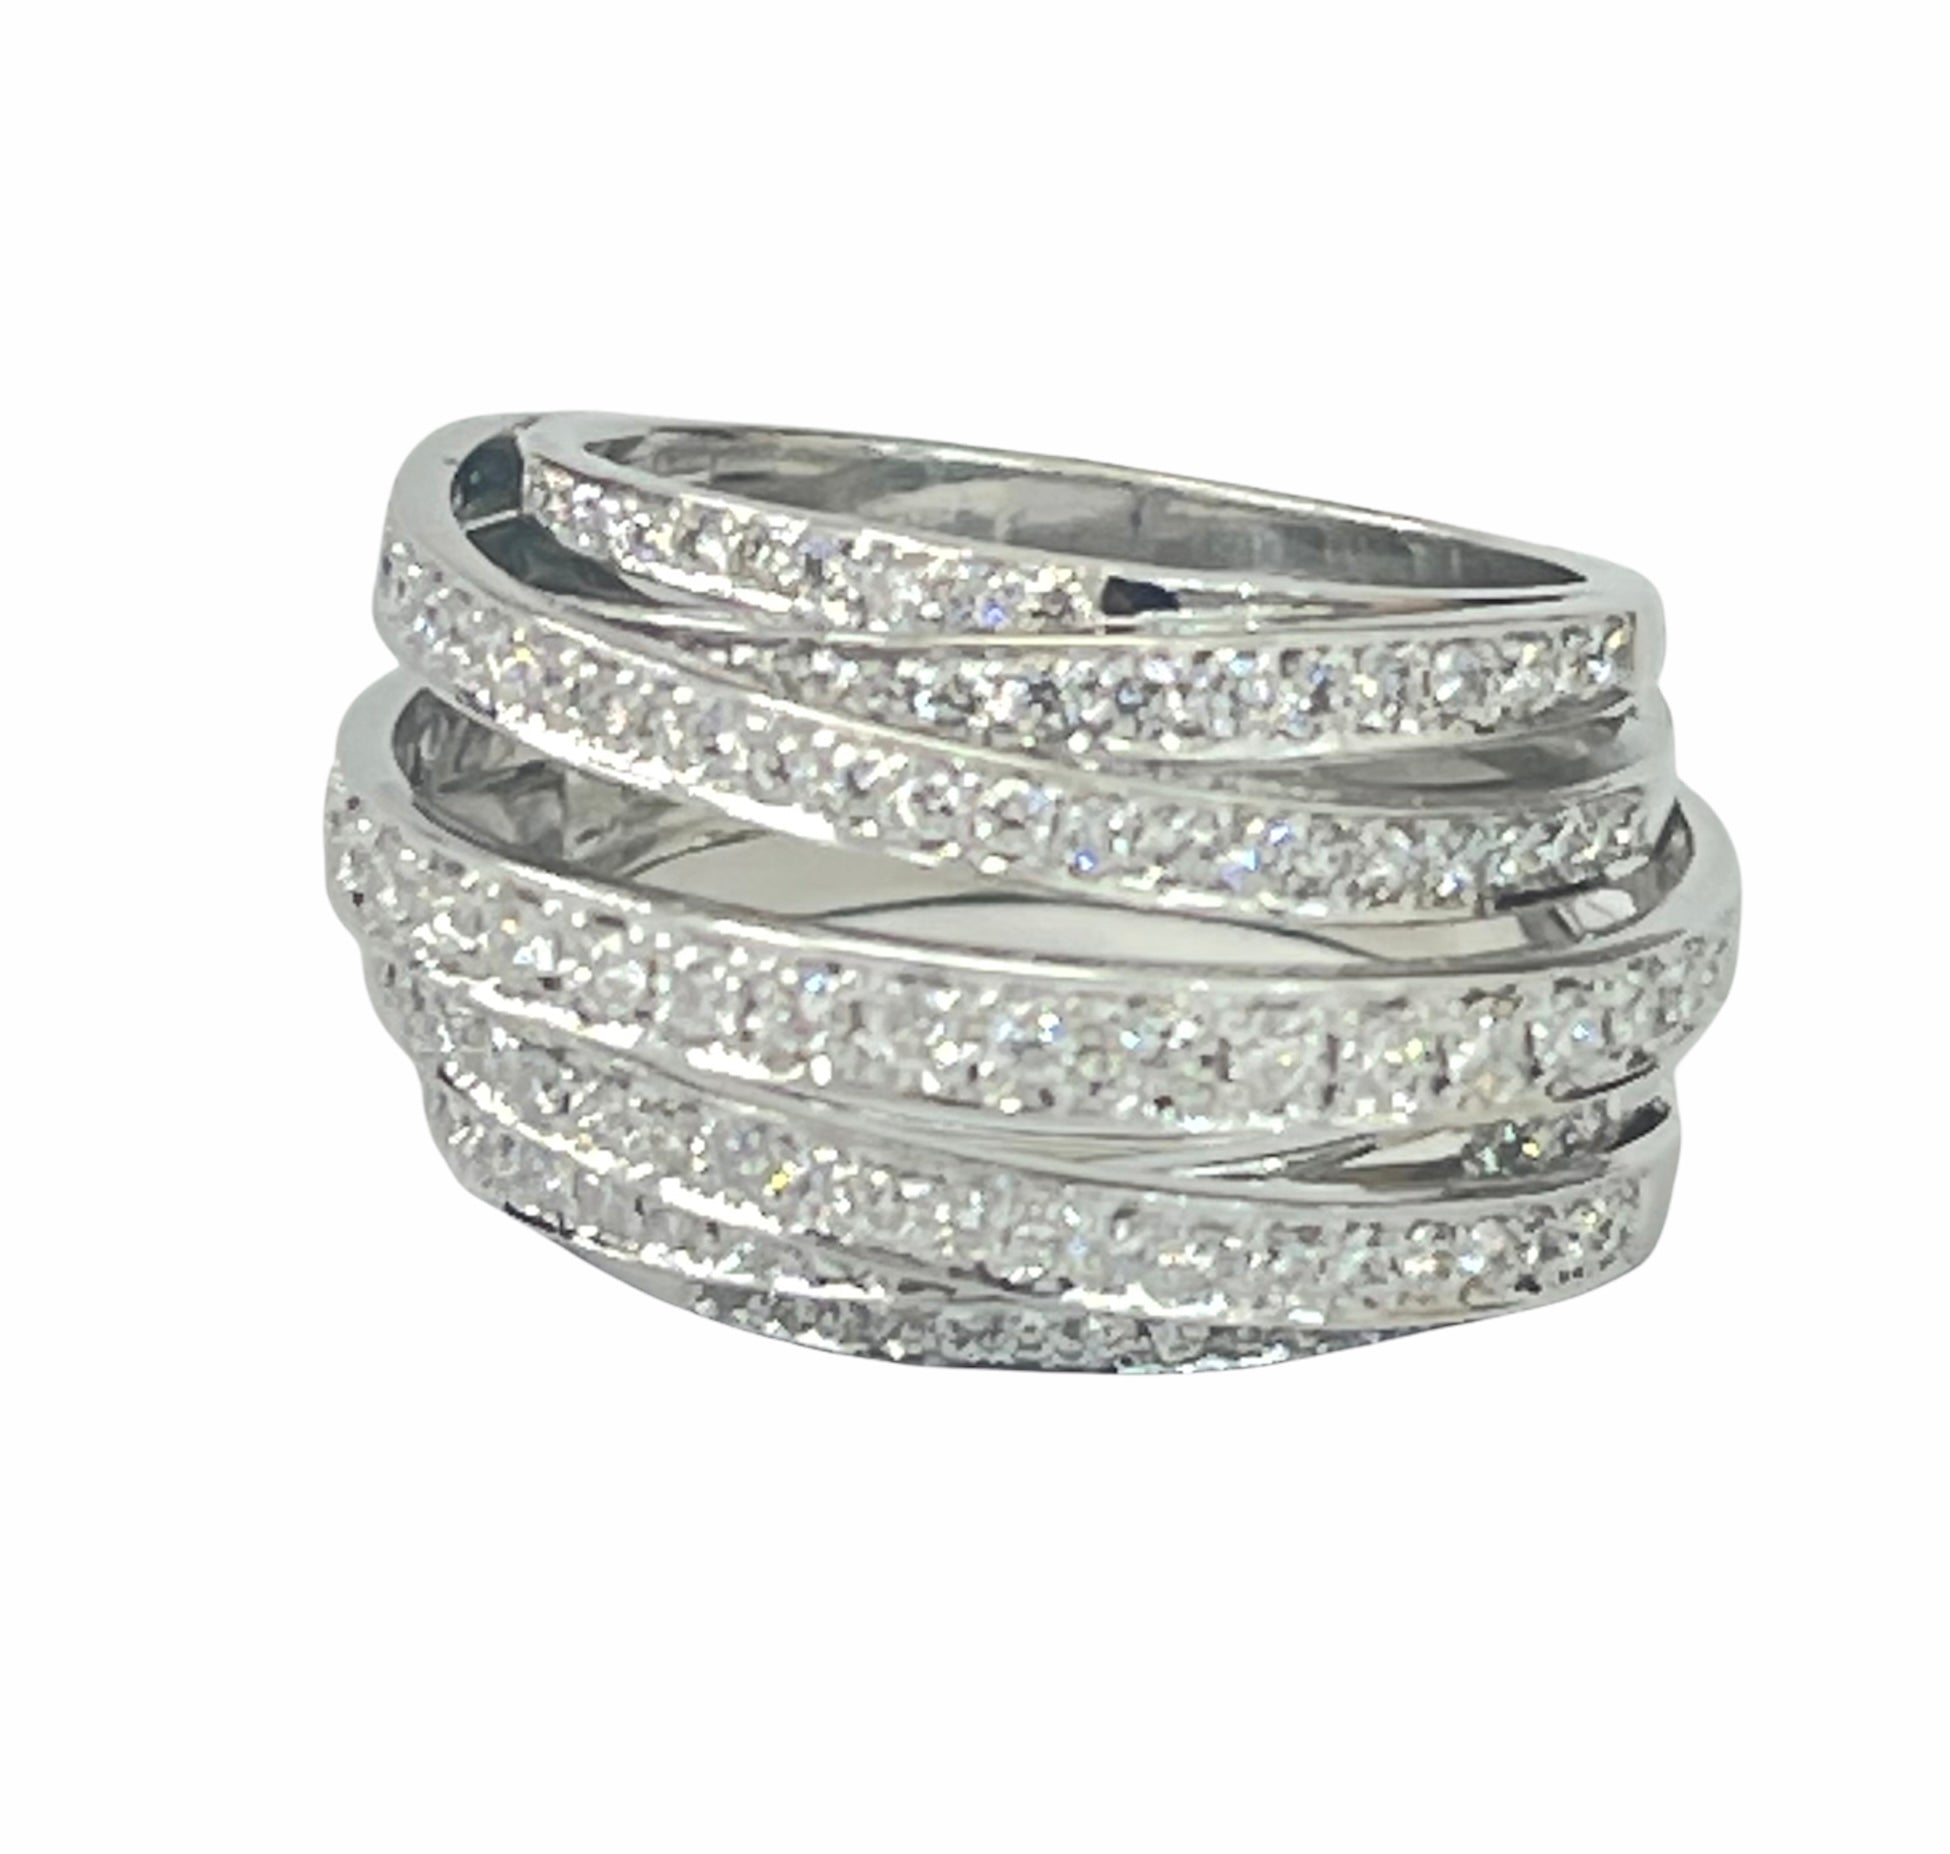 Round Brilliants Seven Ropes Fashion Diamond Ring White Gold 18kt